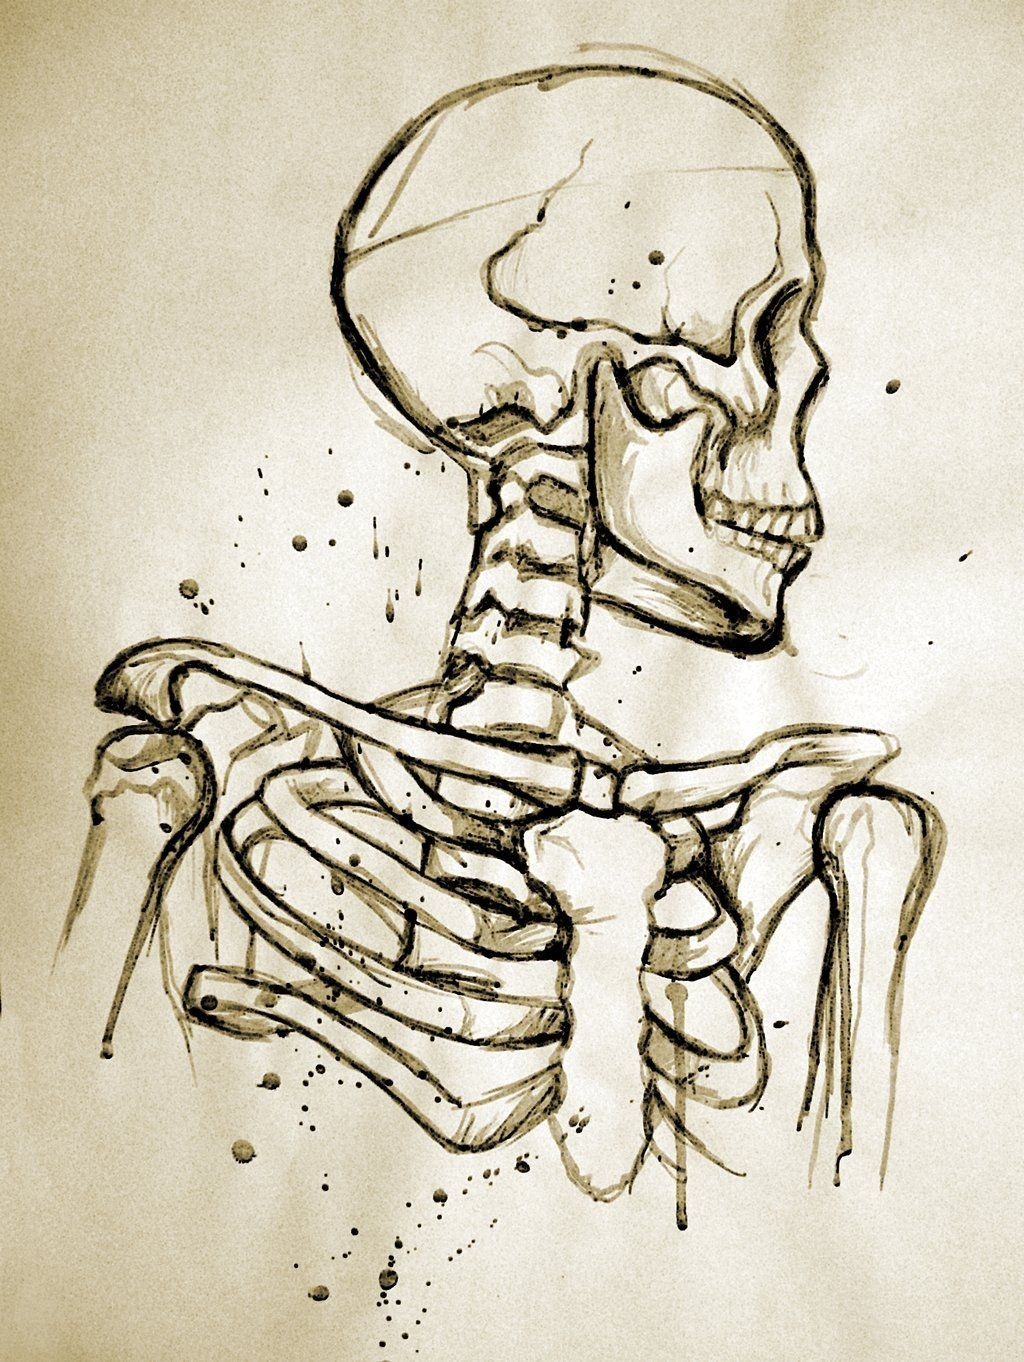 Скелет для срисовки